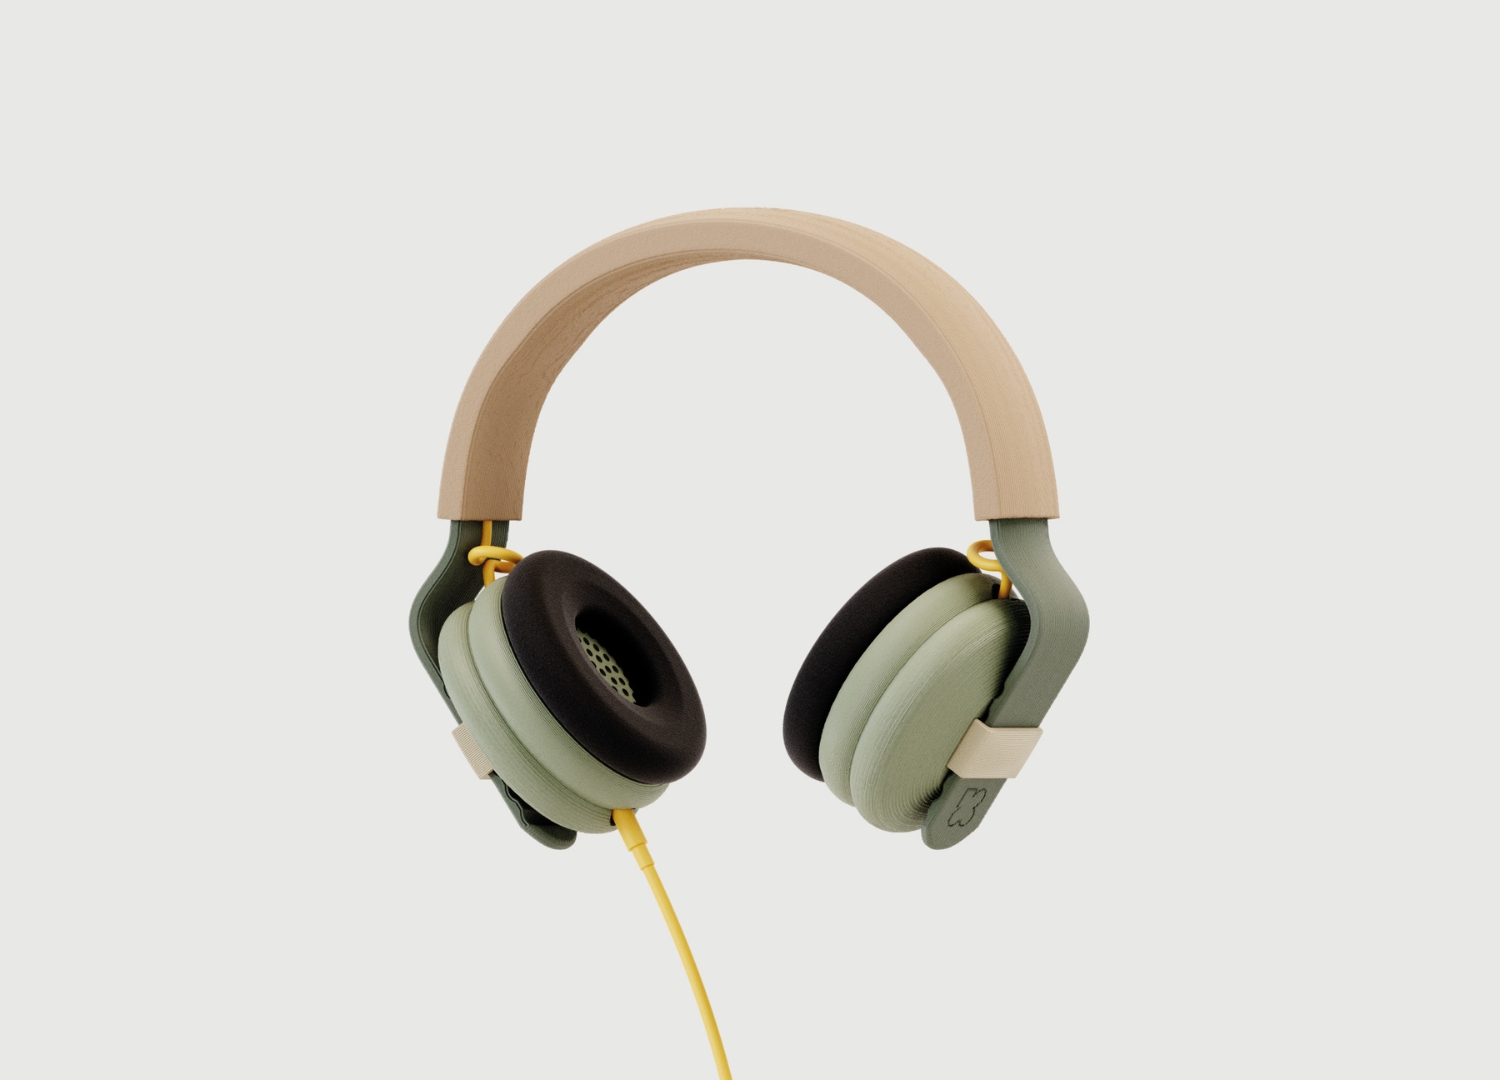 Kibu headphones